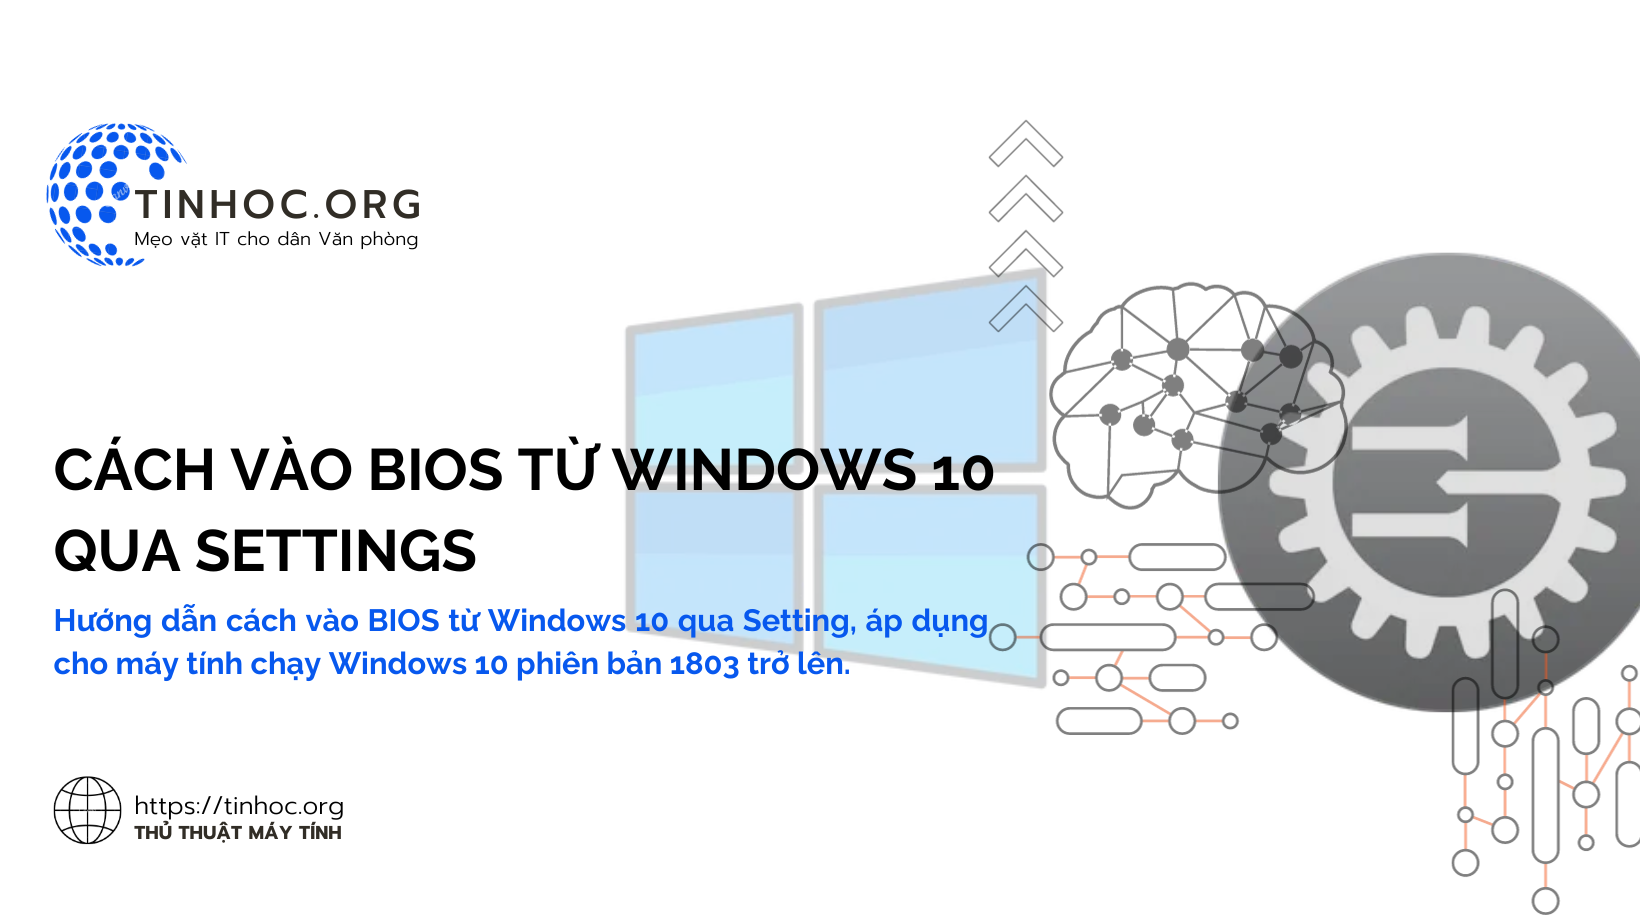 Cách vào BIOS từ Windows 10 qua Settings